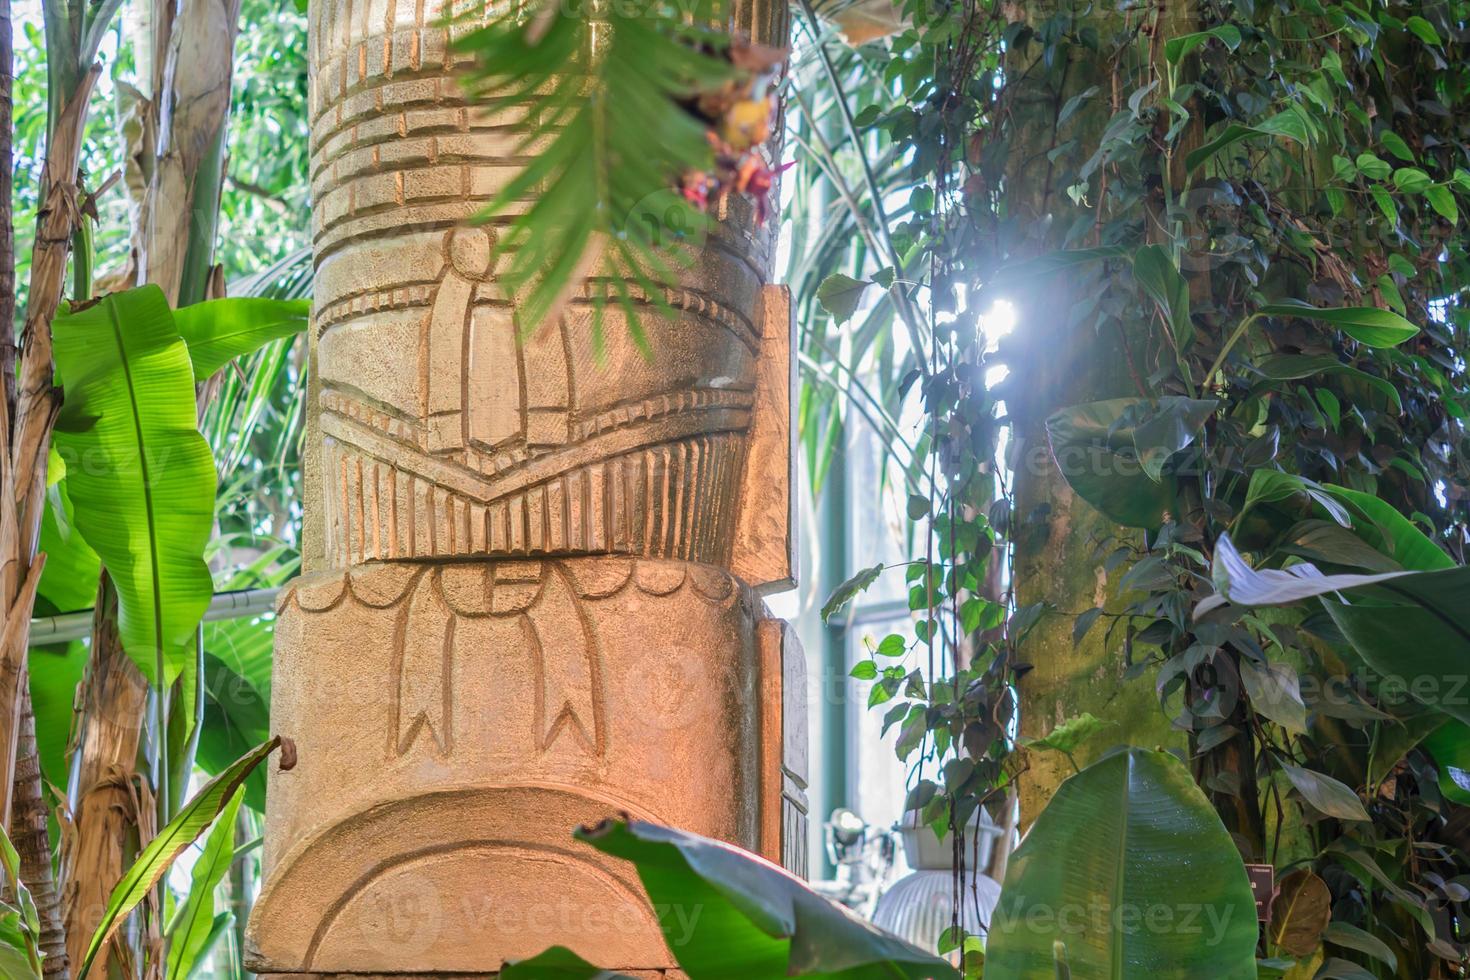 gran estatura azteca de piedra en el bosque tropical. foto